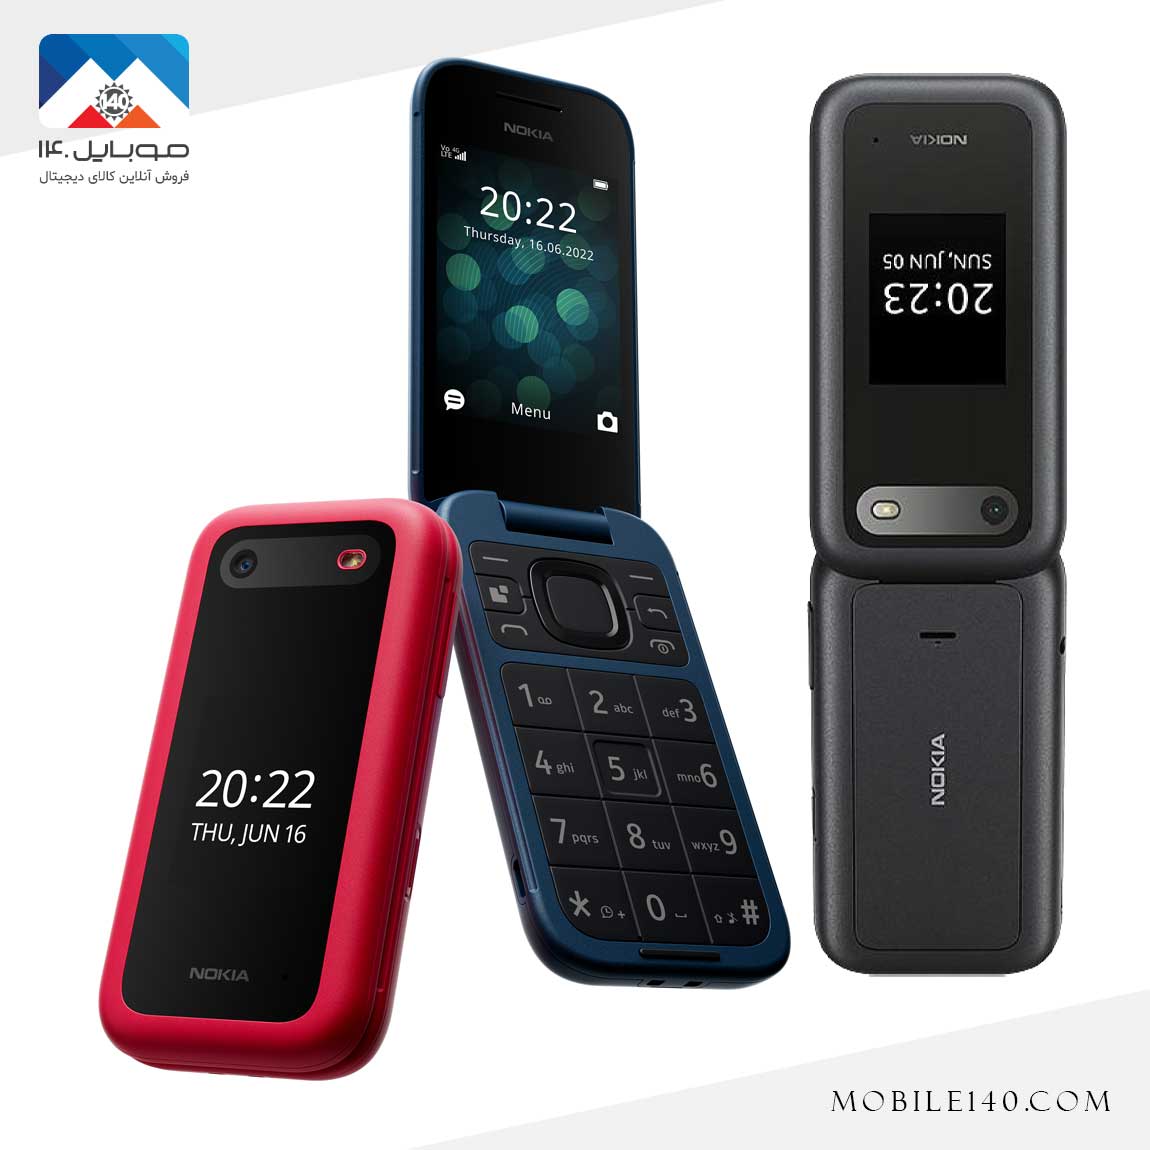 Nokia 2660 5